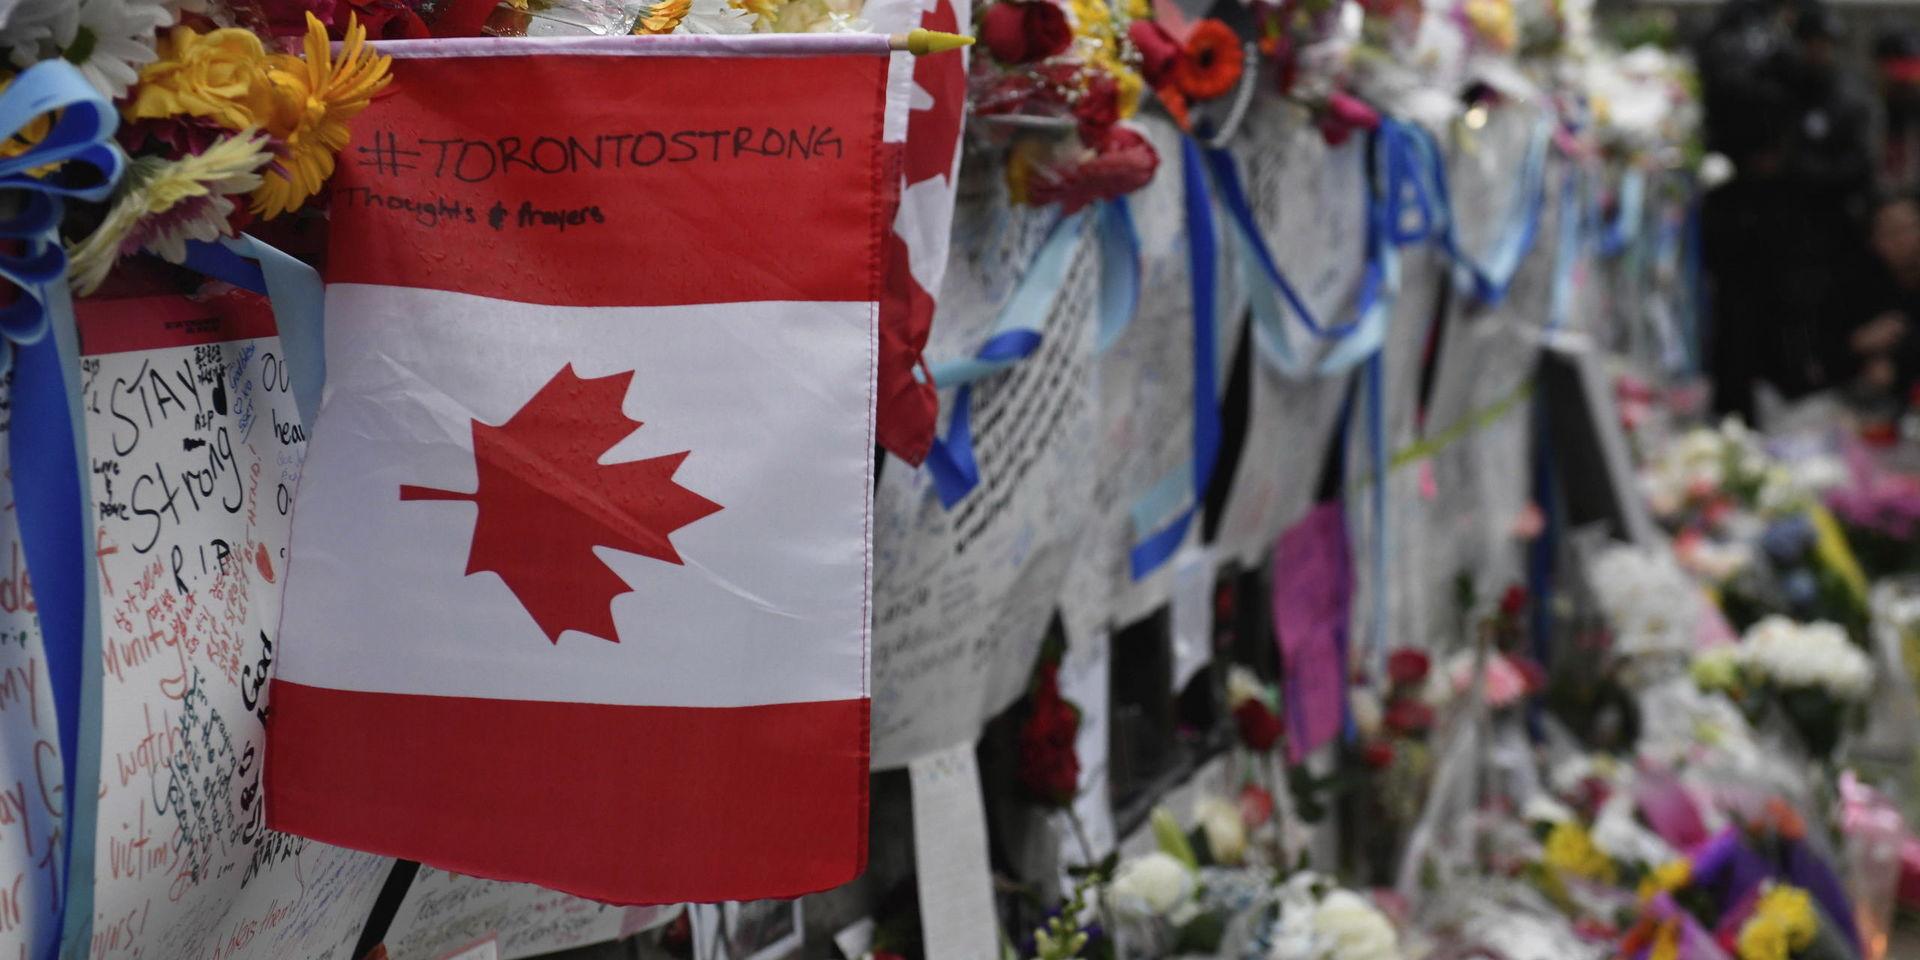 Efter dådet. Skyltar lämnade efter en vaka på Yonge Street, Toronto den 24 april 2018, efter att flera människor dödats och skadats i en lastbilsattack. 